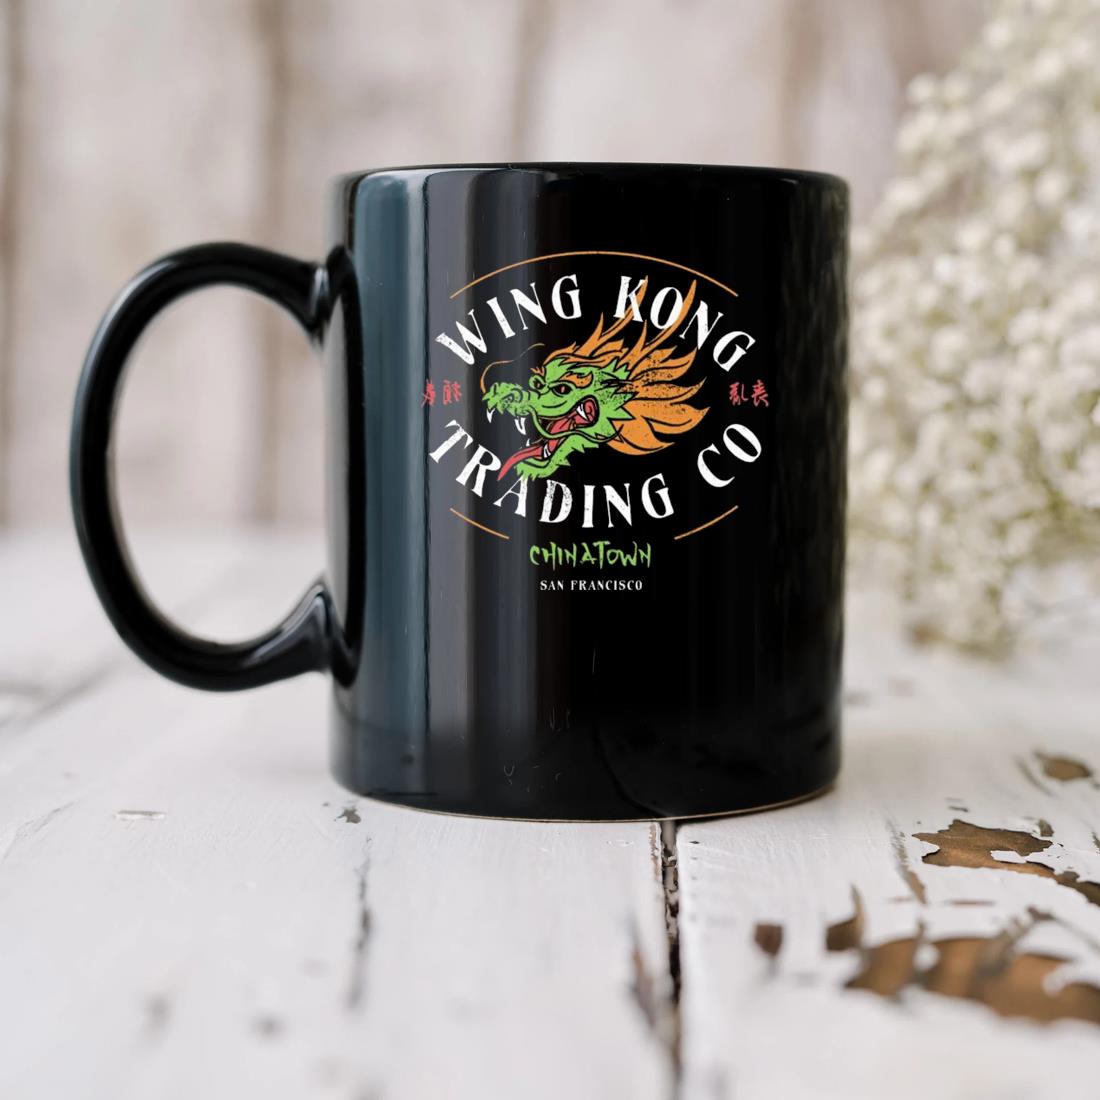 Wing Kong Trading Co Mug